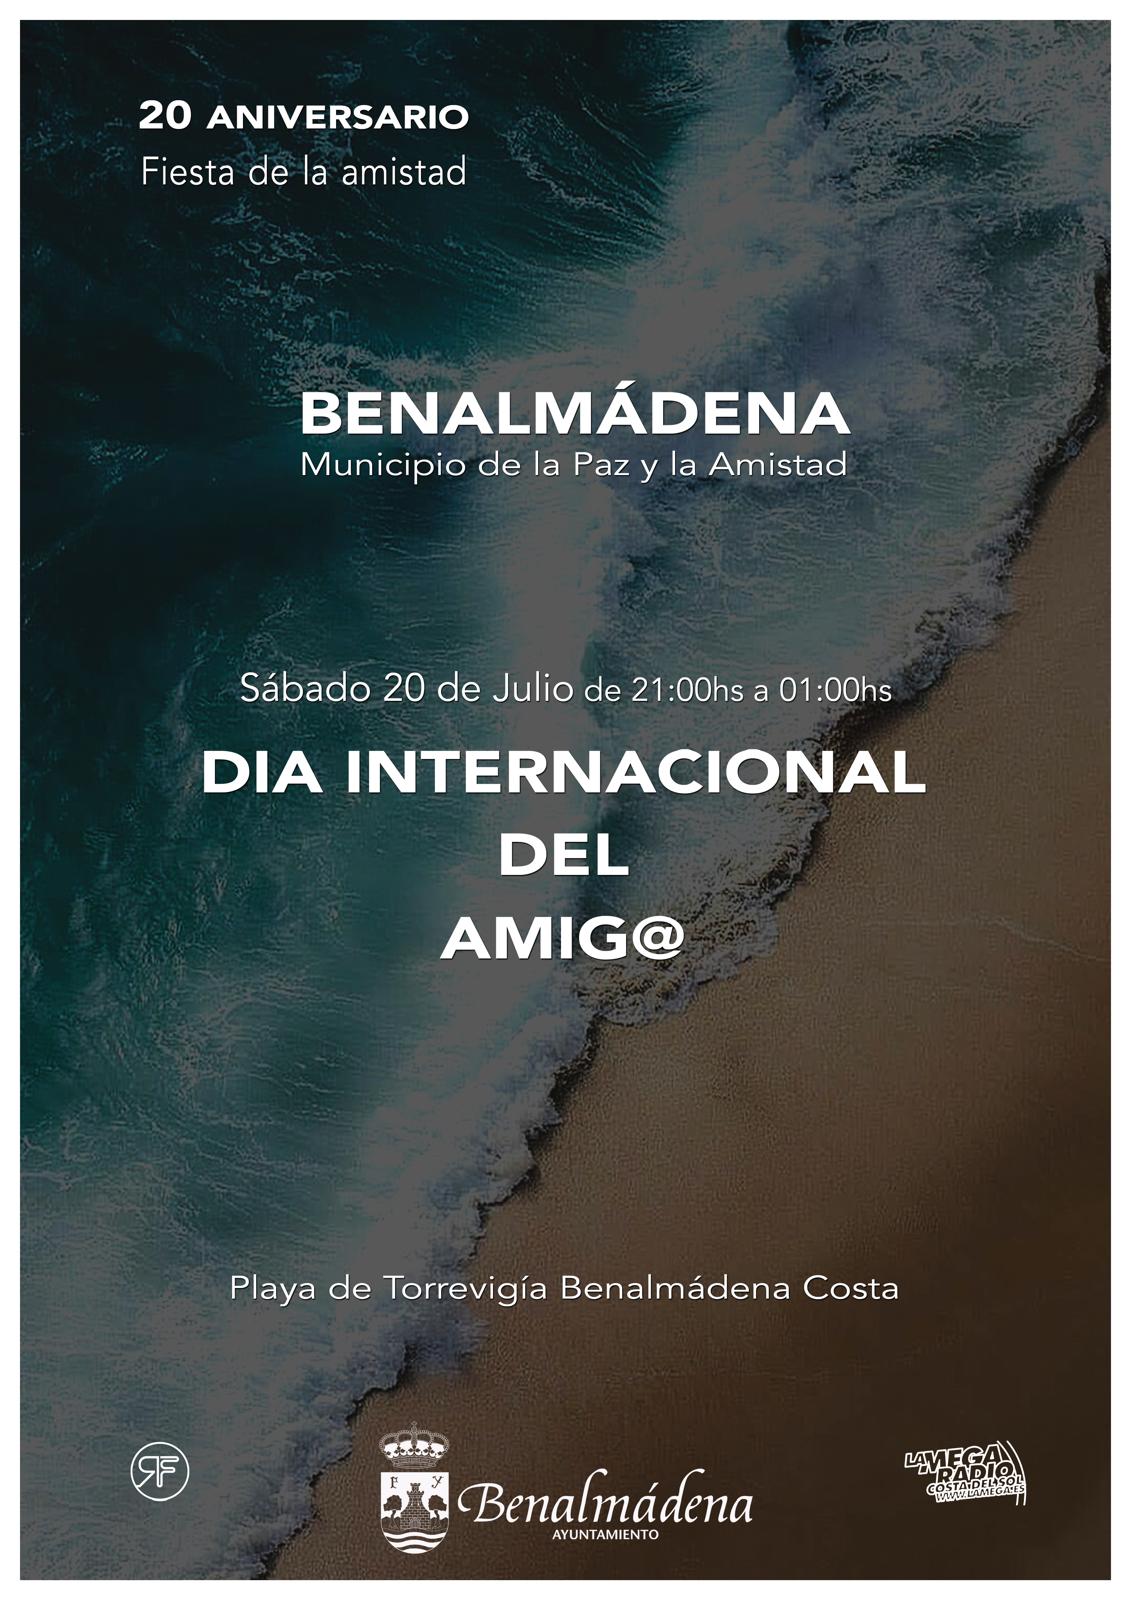 El sábado 20 de julio Benalmádena se vestirá de blanco para celebrar el Día Internacional del Amigo.